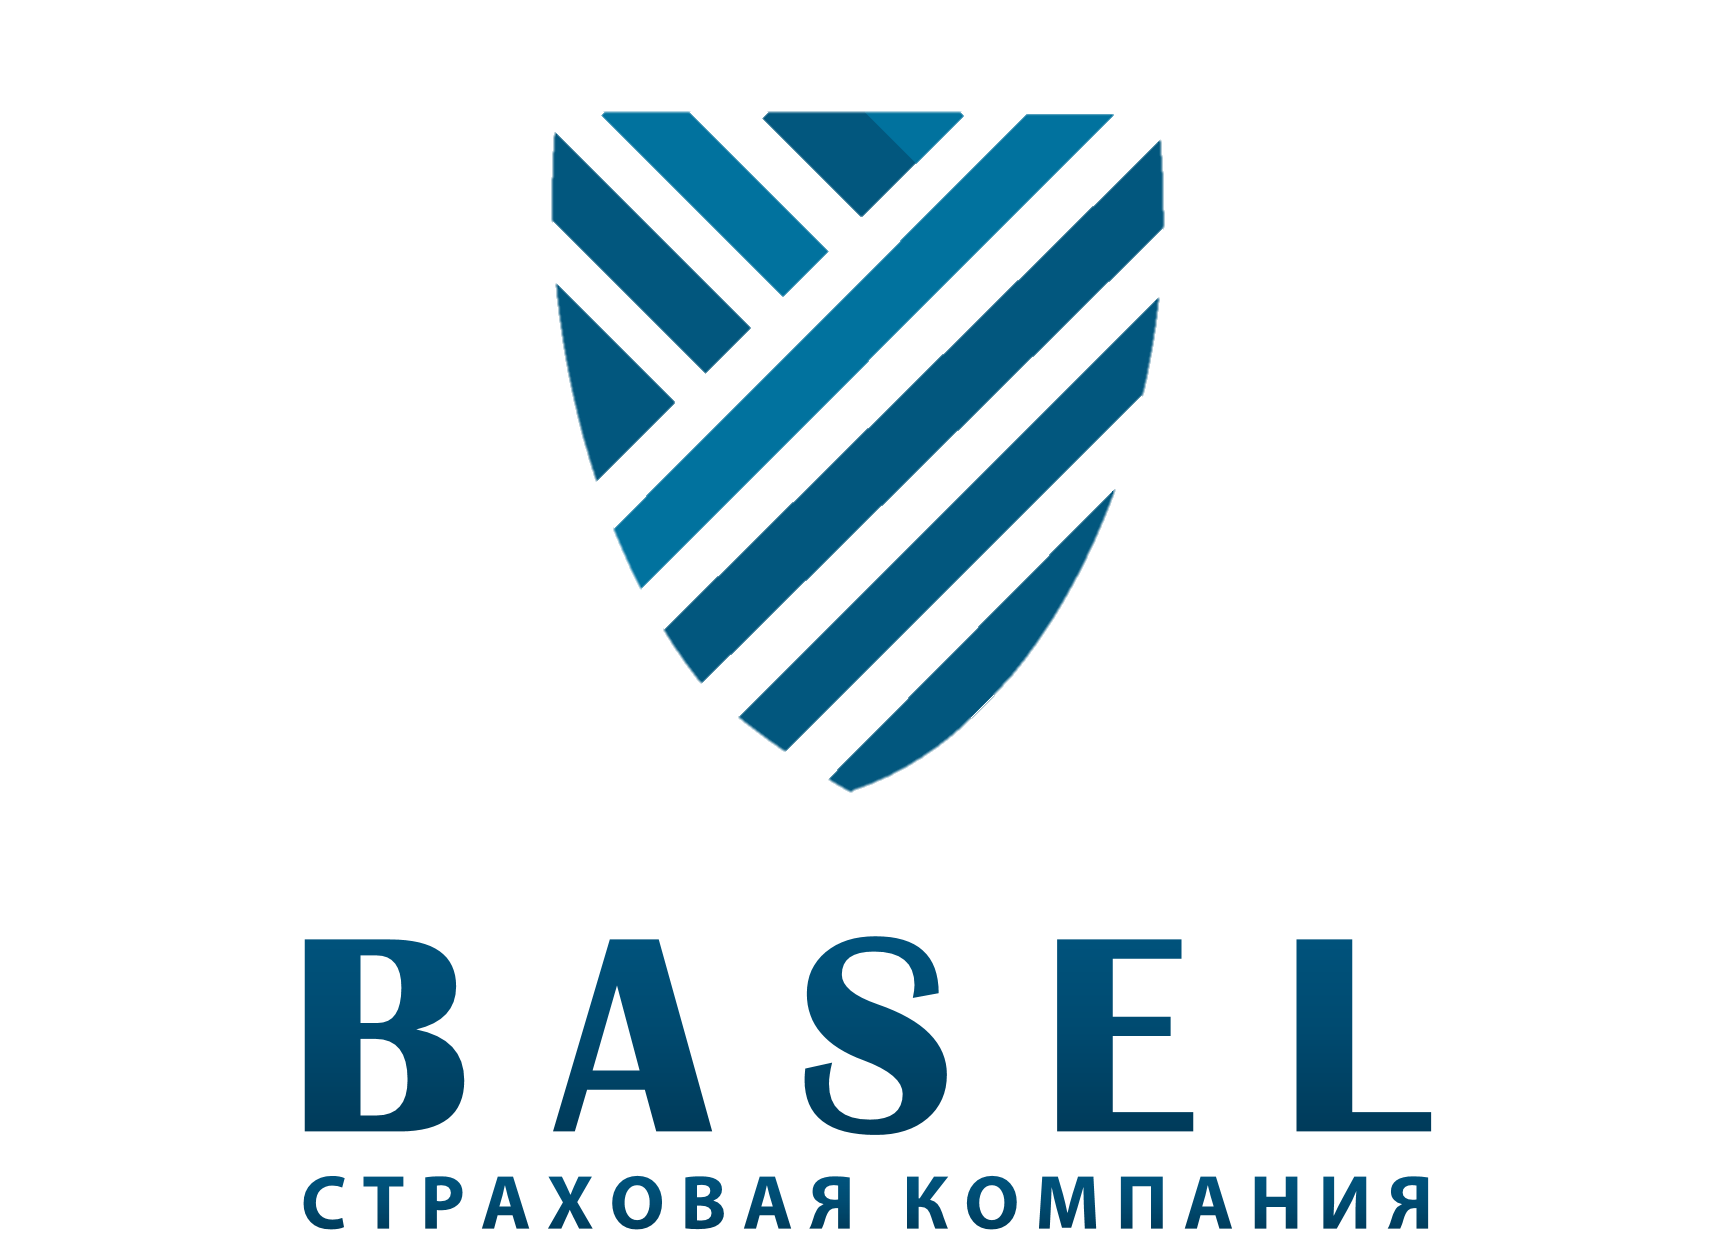 BASEL _страховая компания (1)